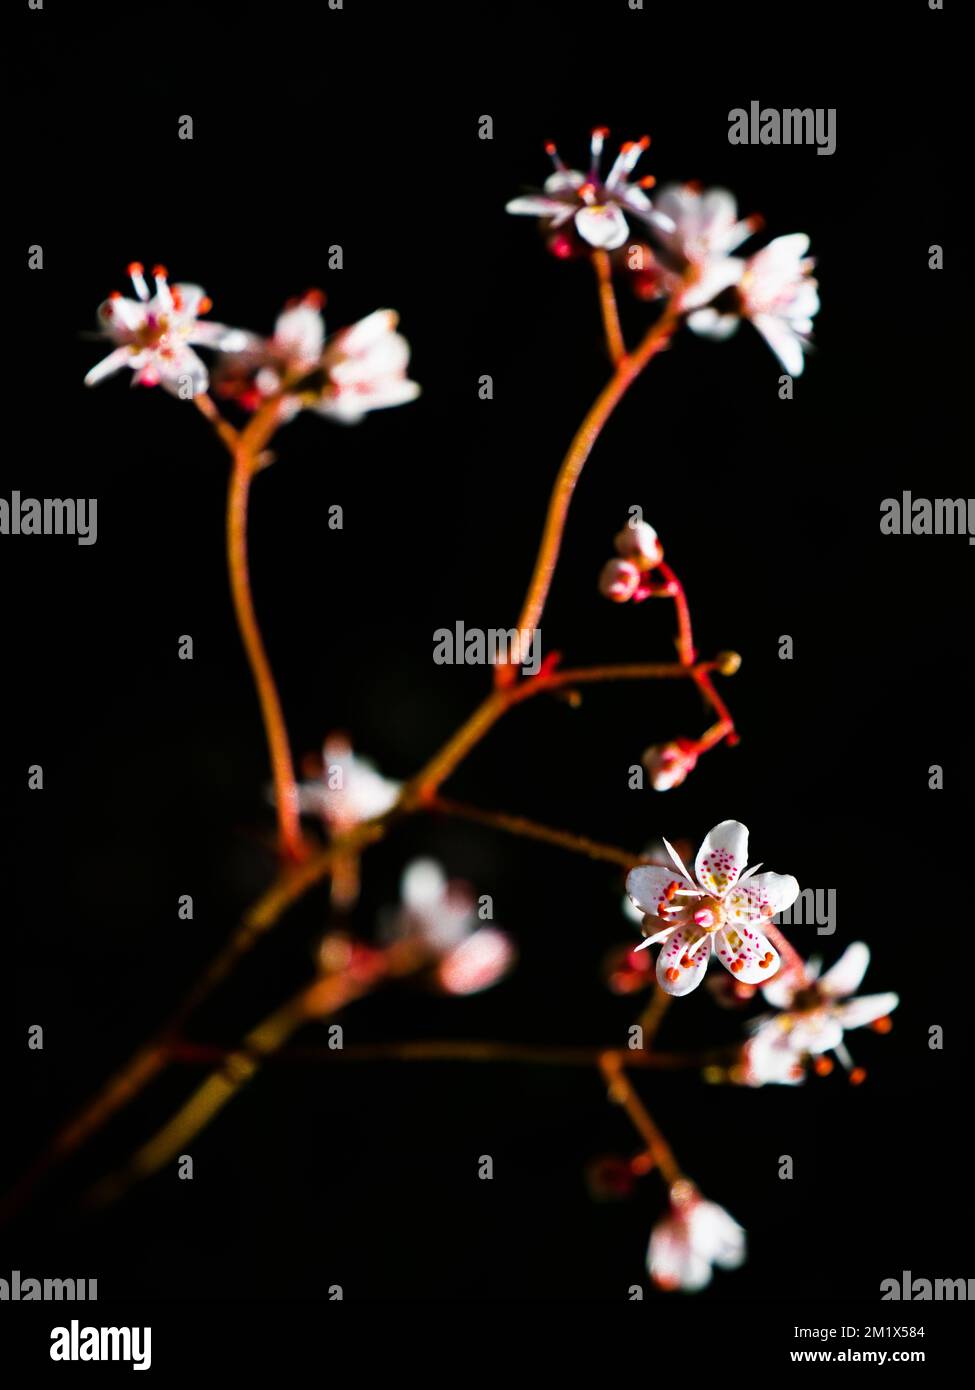 Close up of Saxifraga 'Urbium', London Pride, flower in garden against dark background Stock Photo